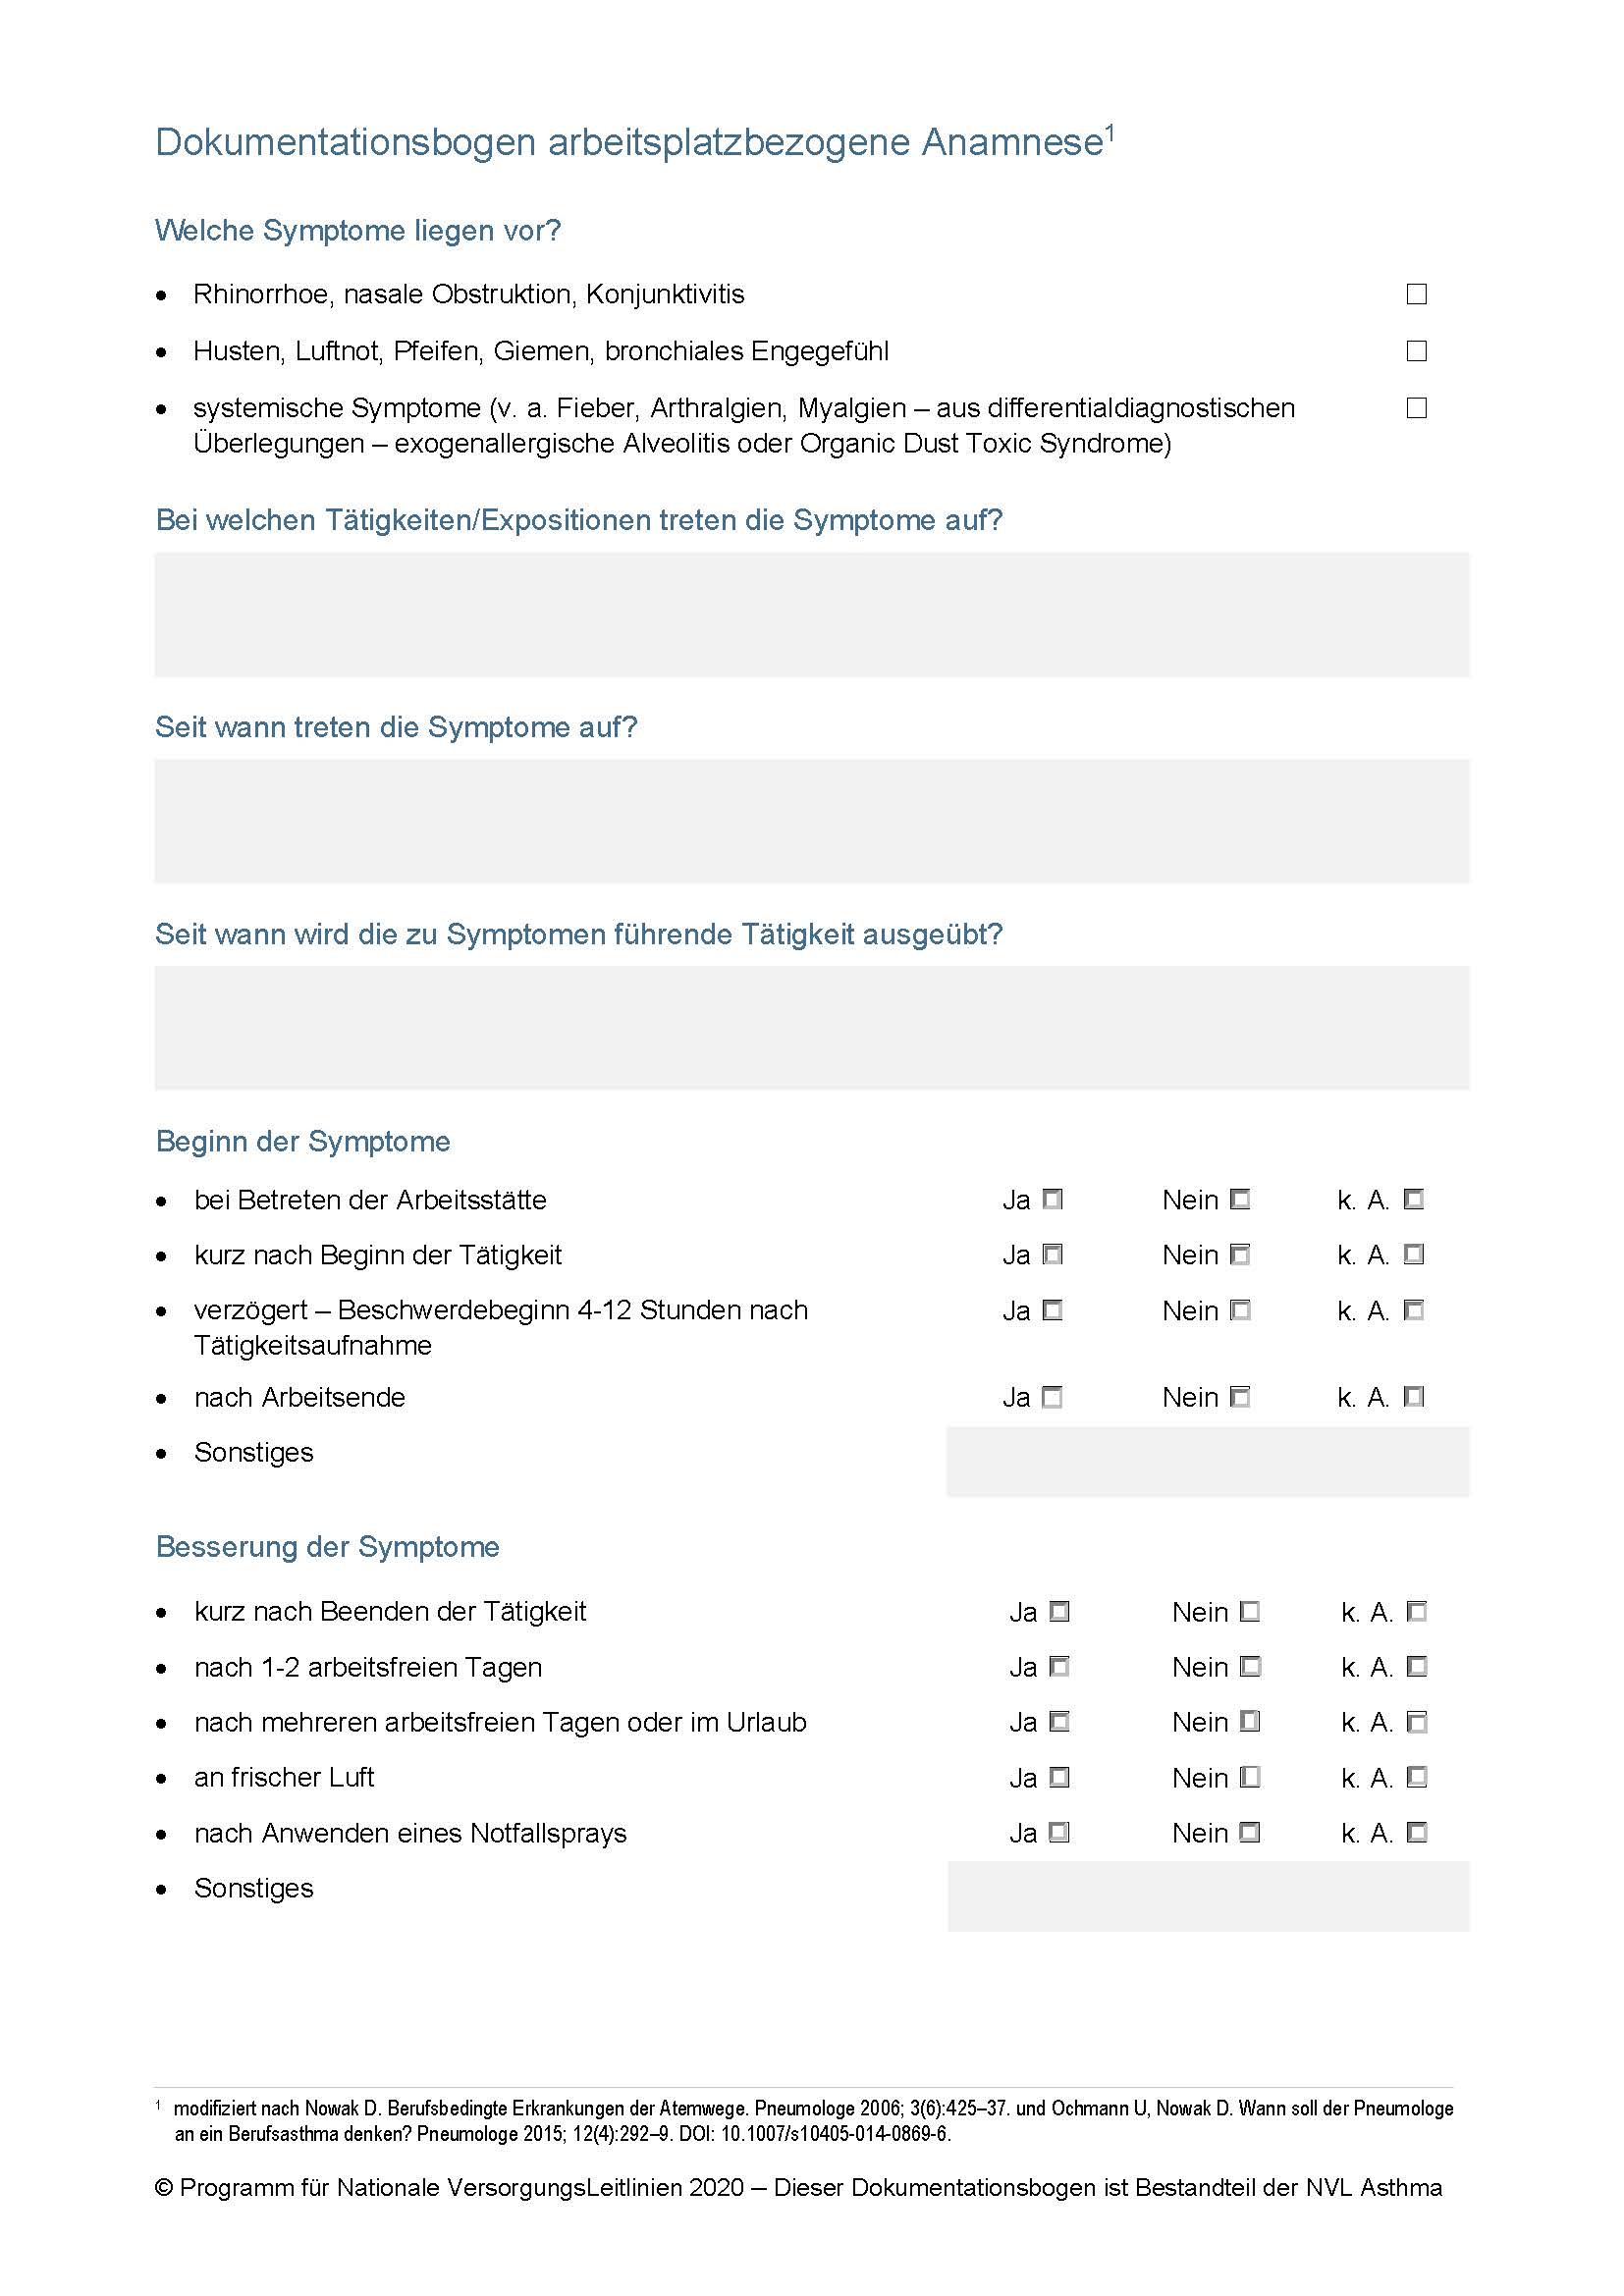 dokumentationsbogen-arbeitsplatzbezogene-anamnese-1.jpg